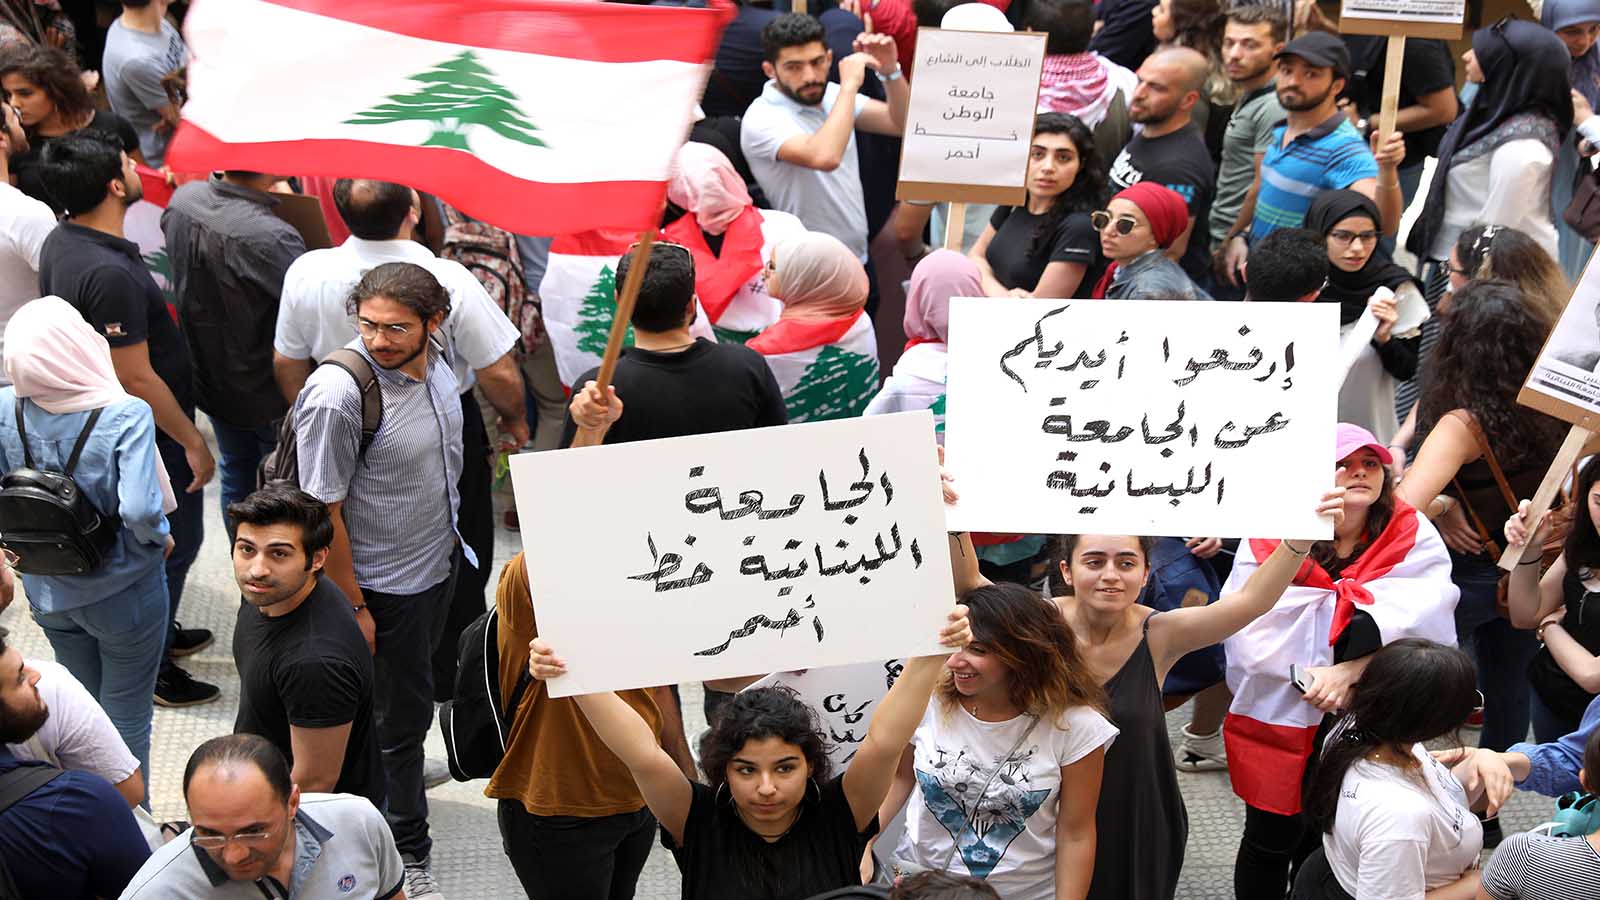 طلاب "اللبنانية" في الشمال: إضراب الأساتذة يهدد حياتنا ومستقبلنا